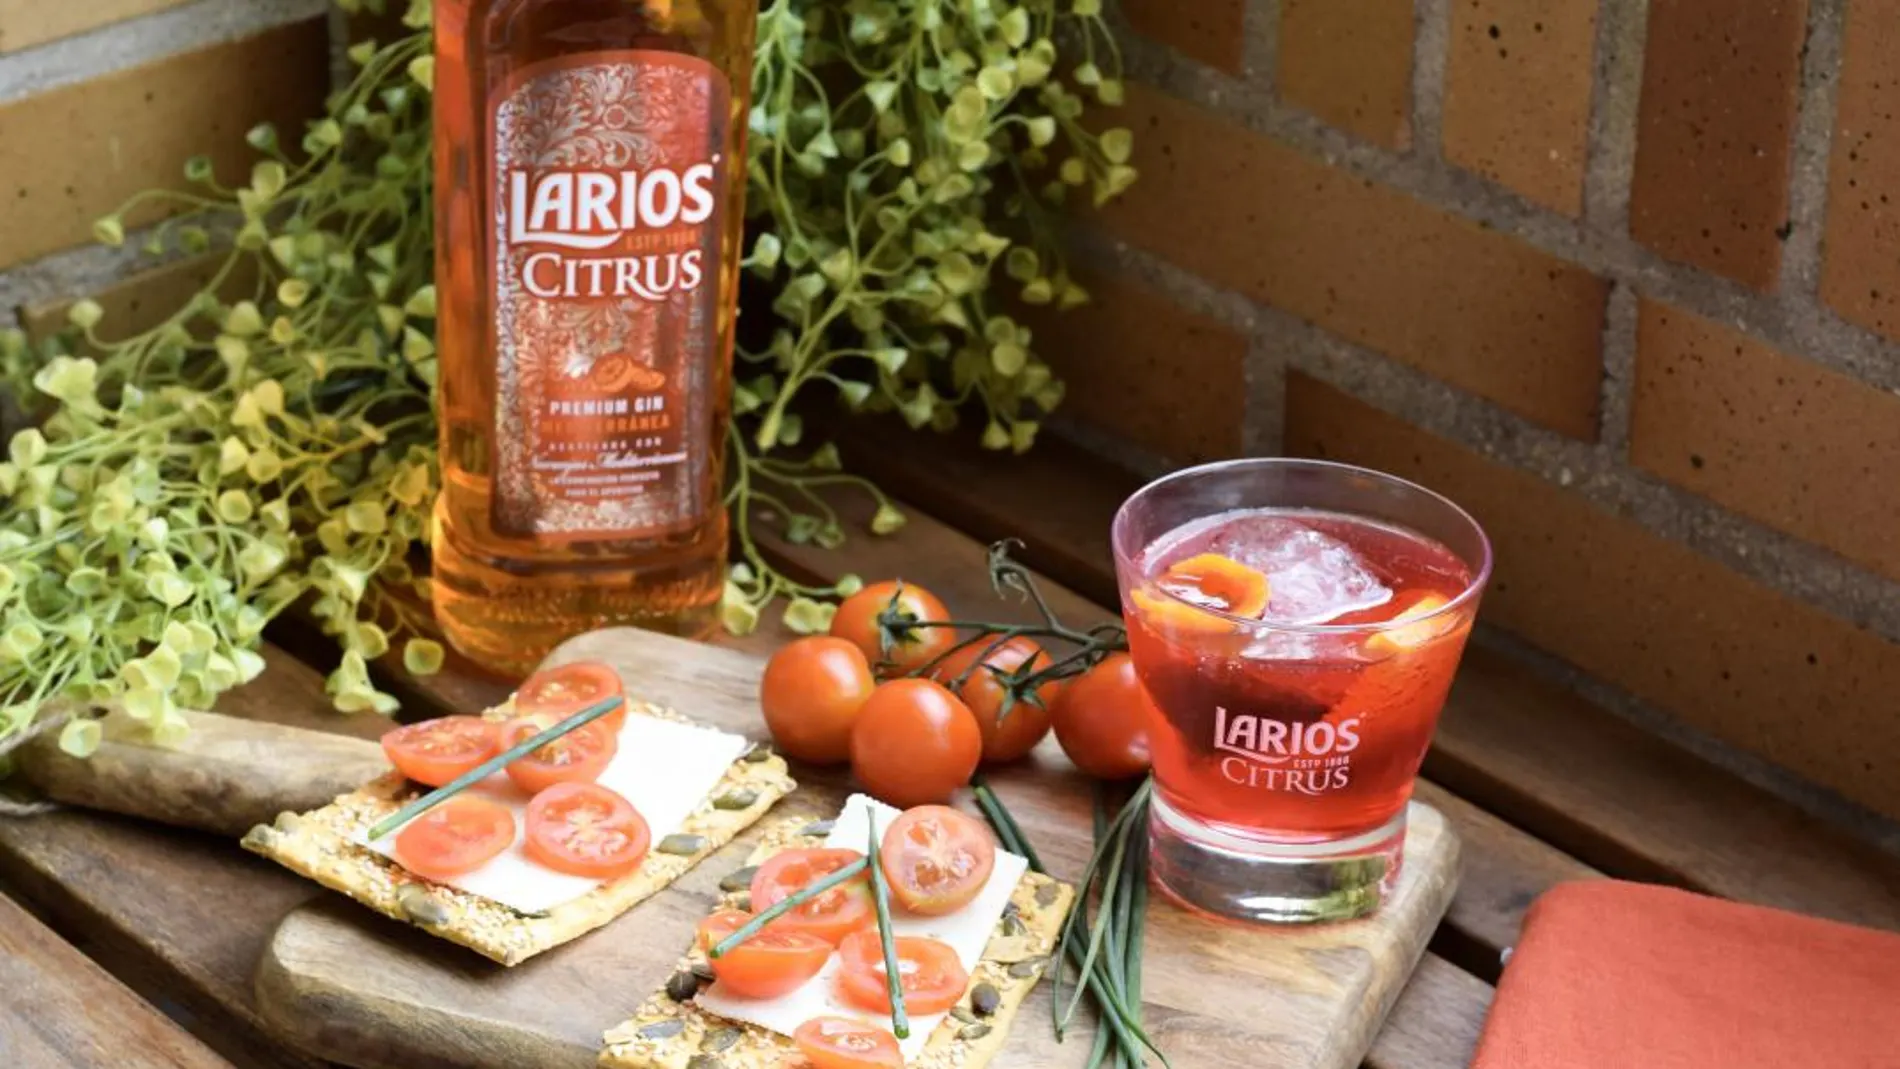 Larios Citrus, una nueva ginebra suave y muy refrescante, inspirada en la esencia de las naranjas mediterráneas